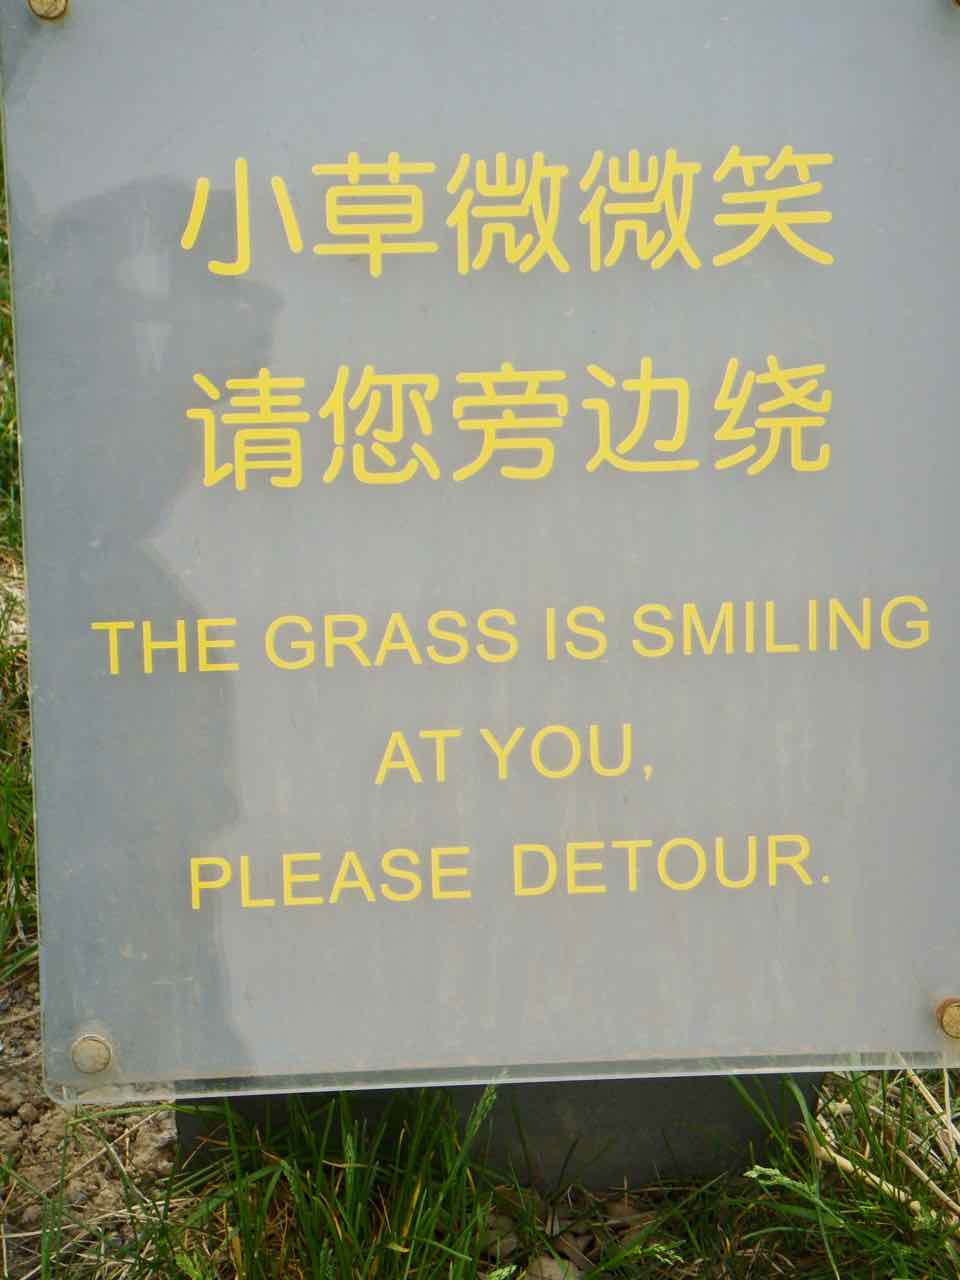 Keep off grass sign Beijing